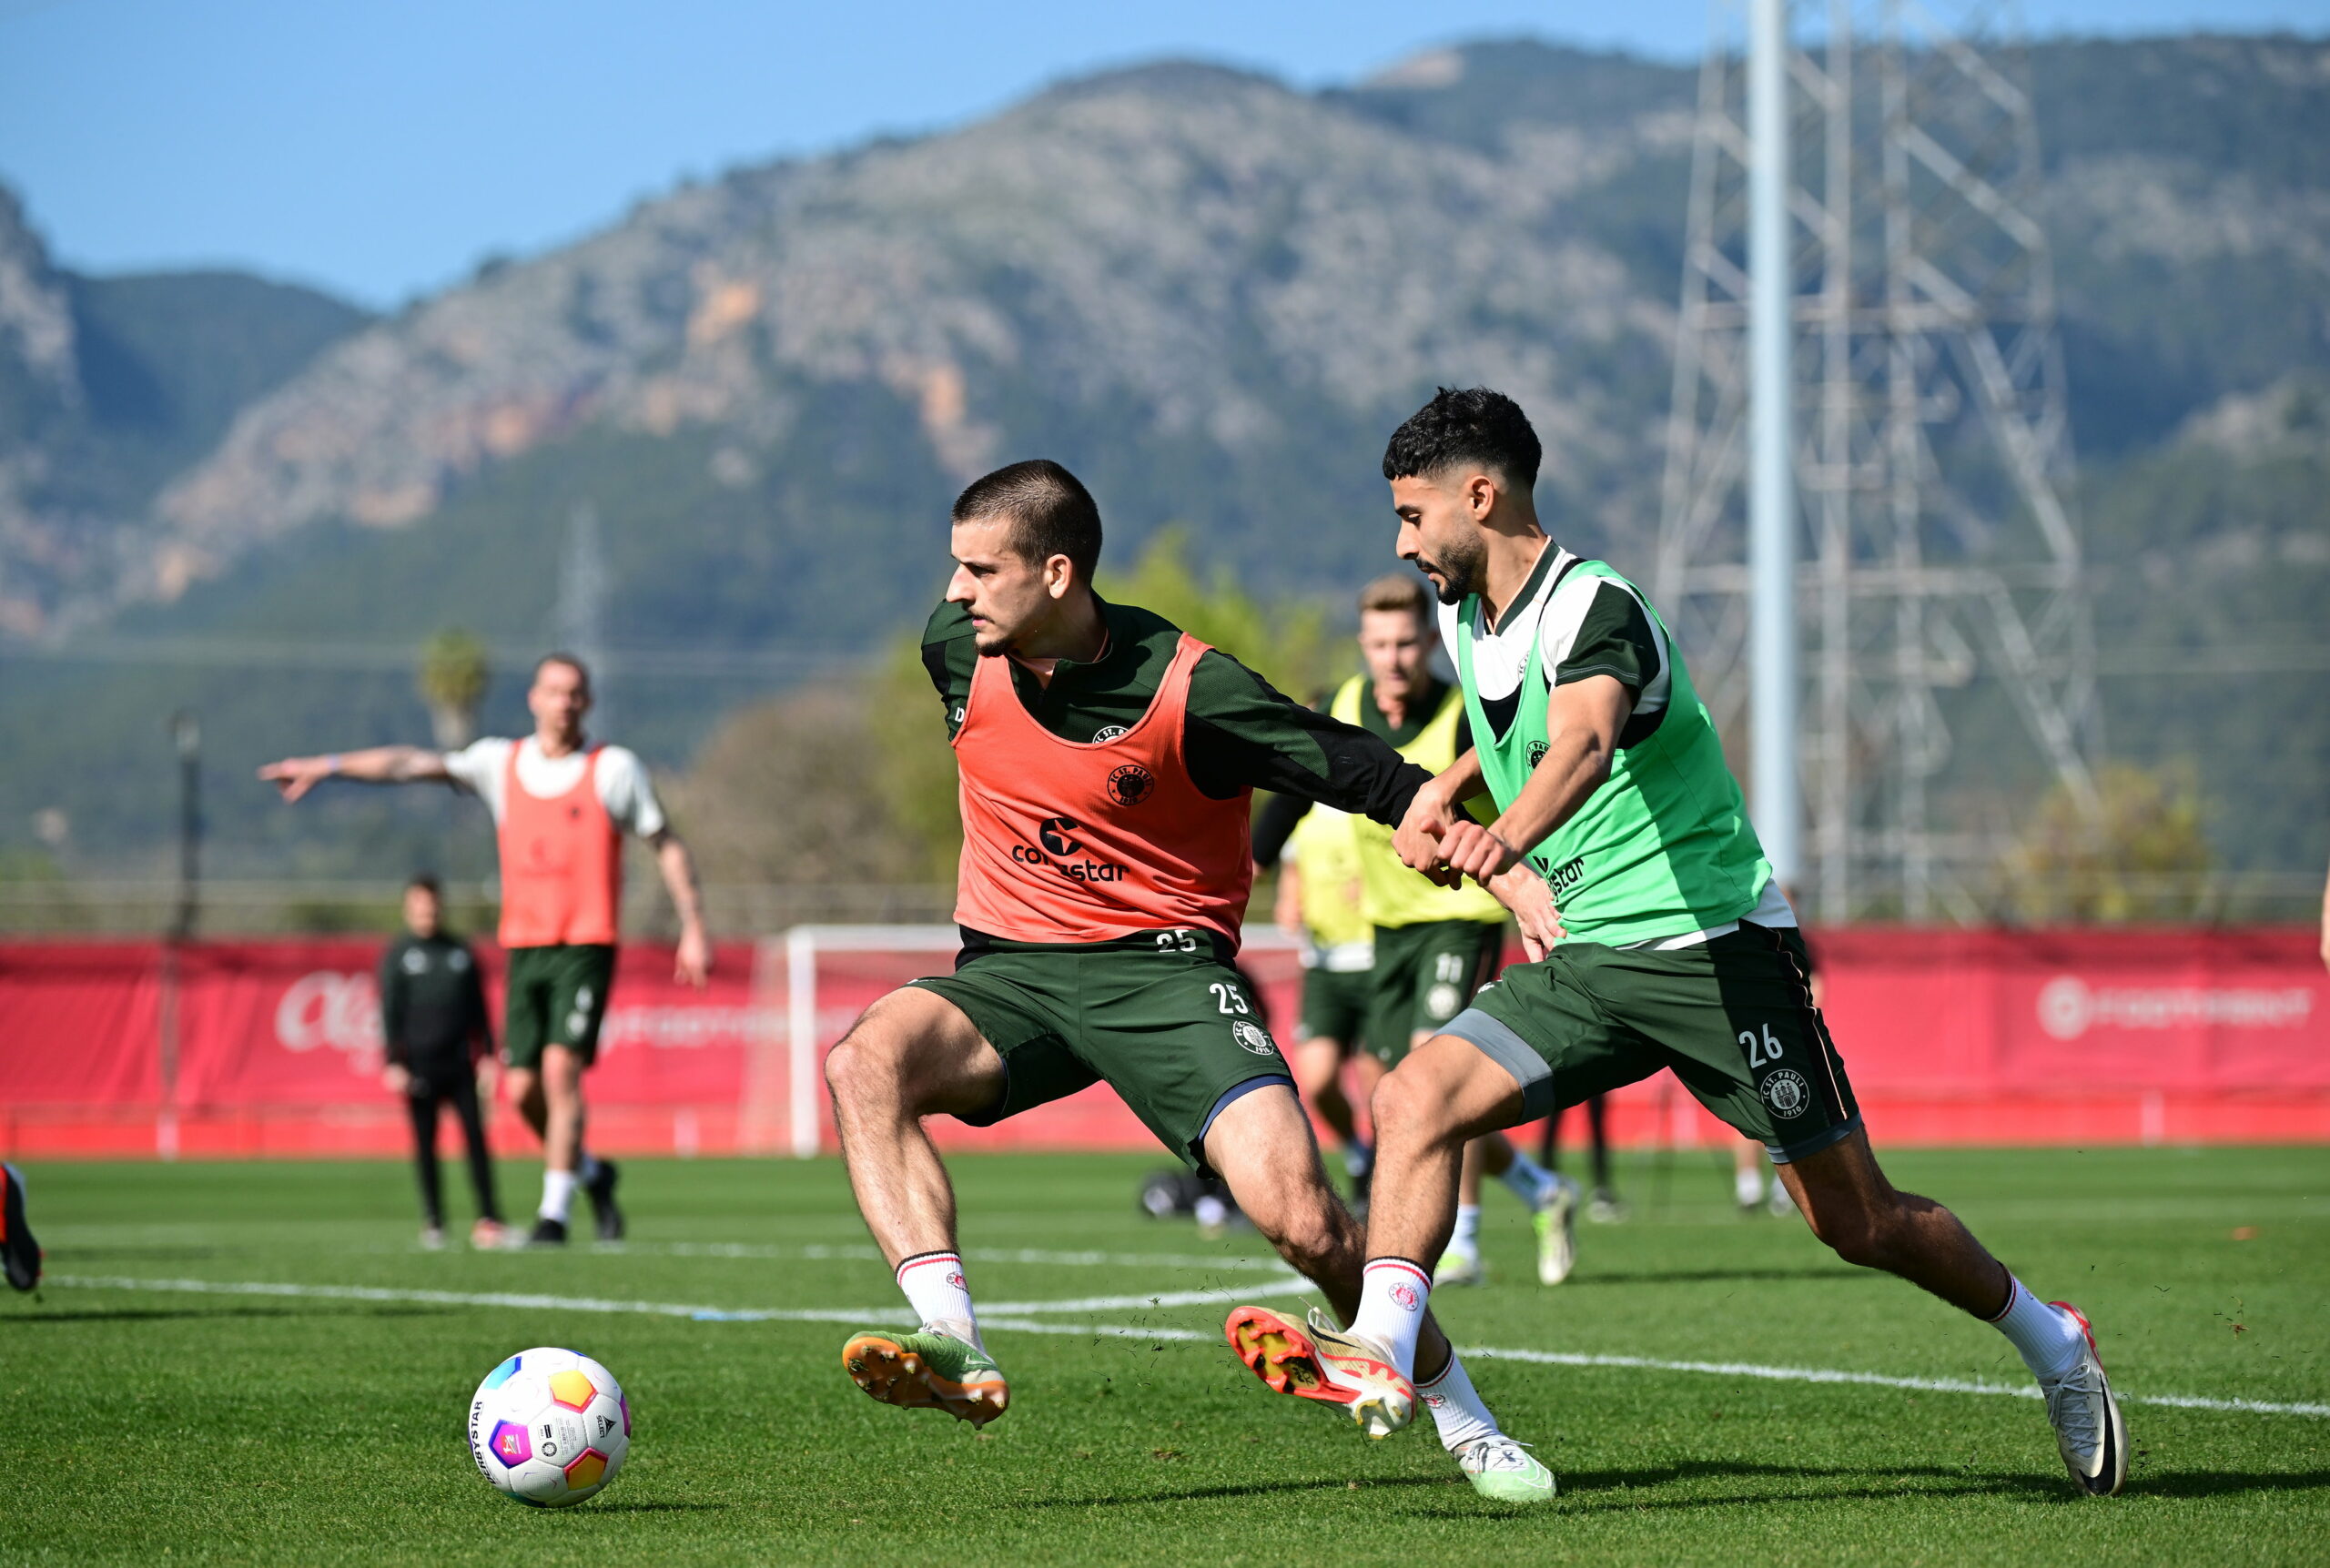 St. Pauli-Profis Dziwagala und Saad kämpfen im Training auf Mallorca um den Ball